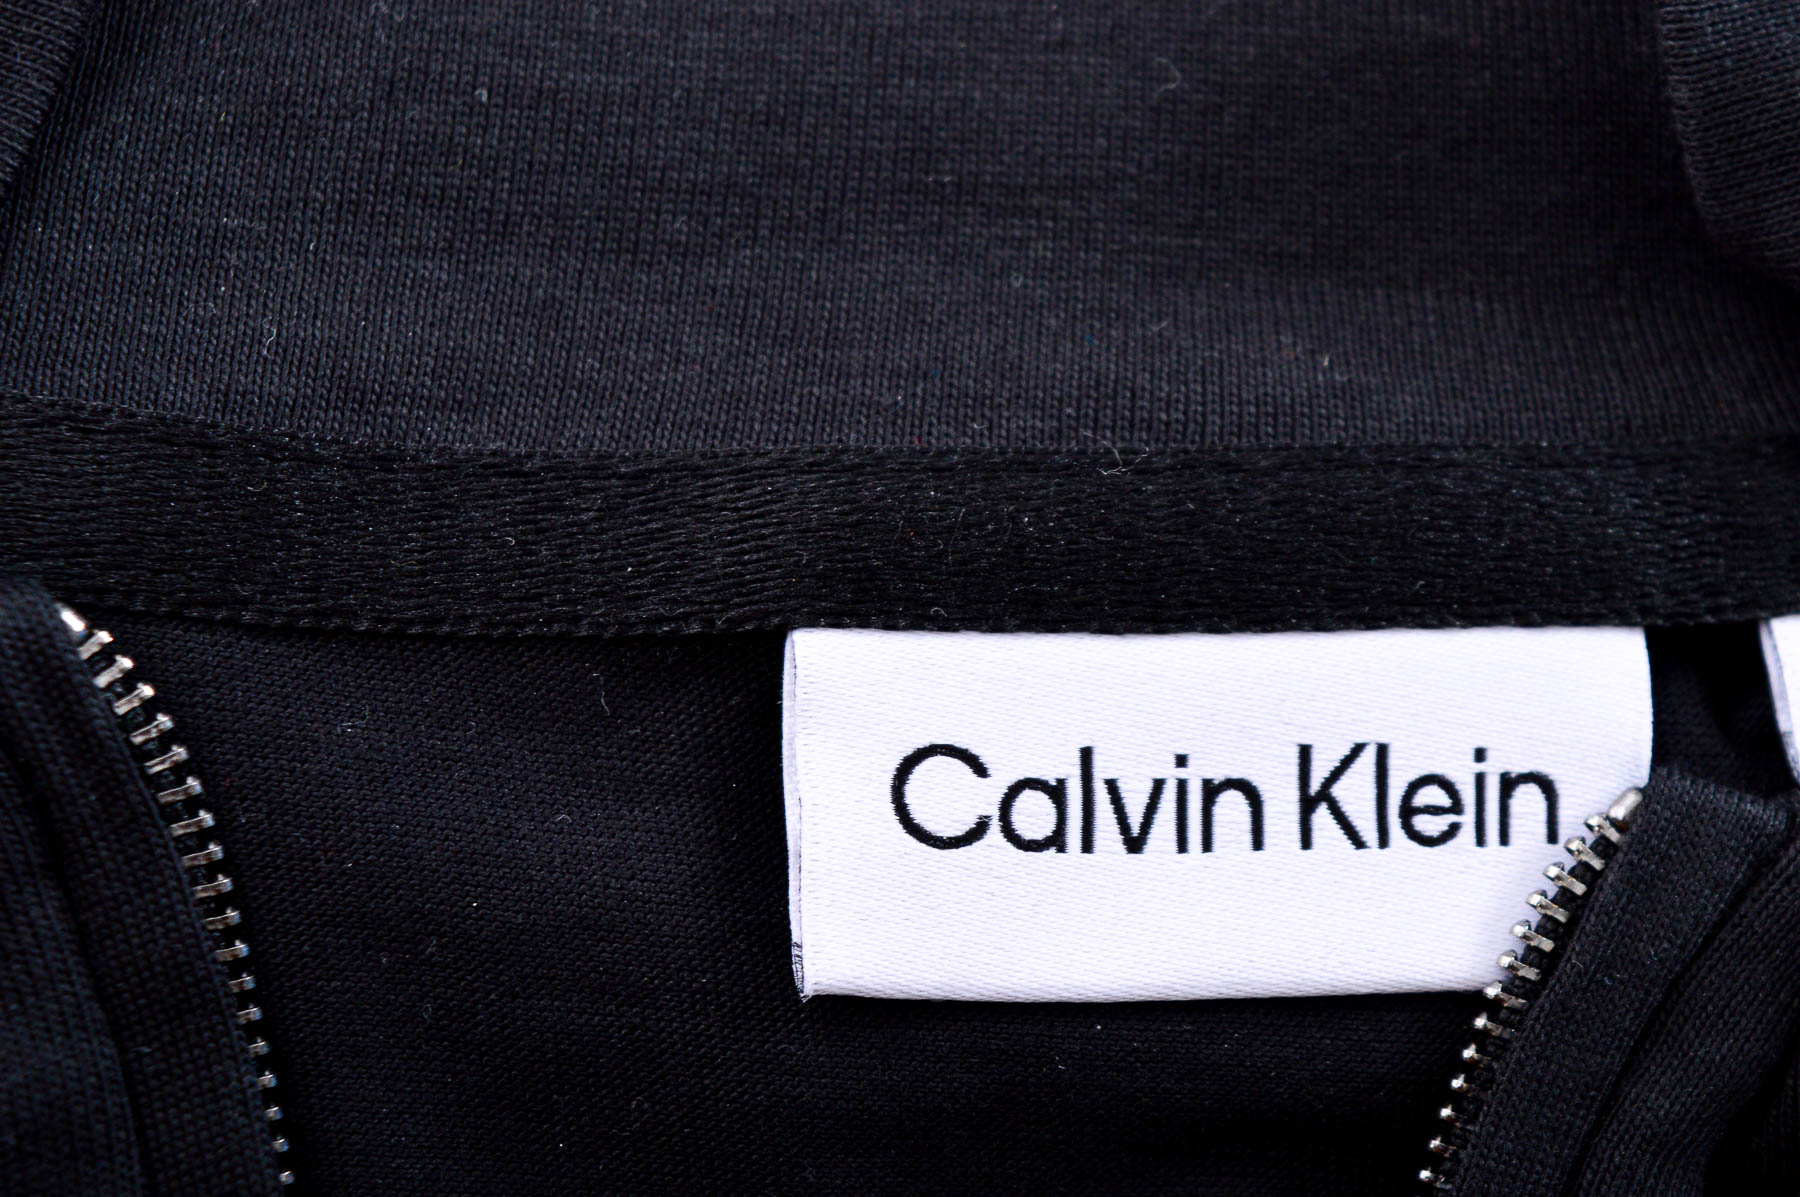 Ανδρική μπλούζα - Calvin Klein - 2